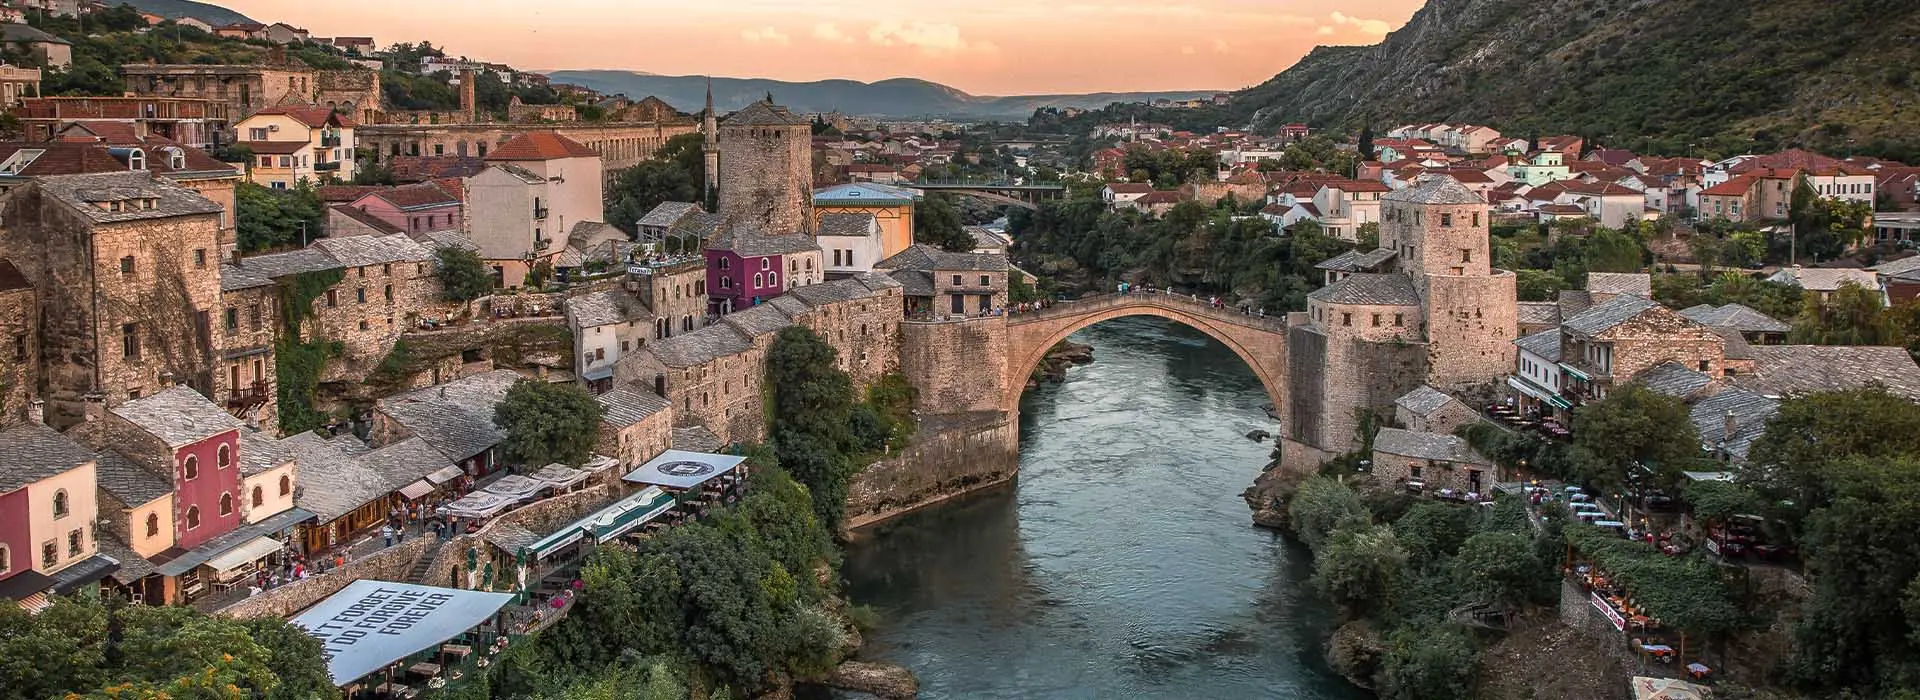 Босния и Герцеговина: что посмотреть за 12 часов 